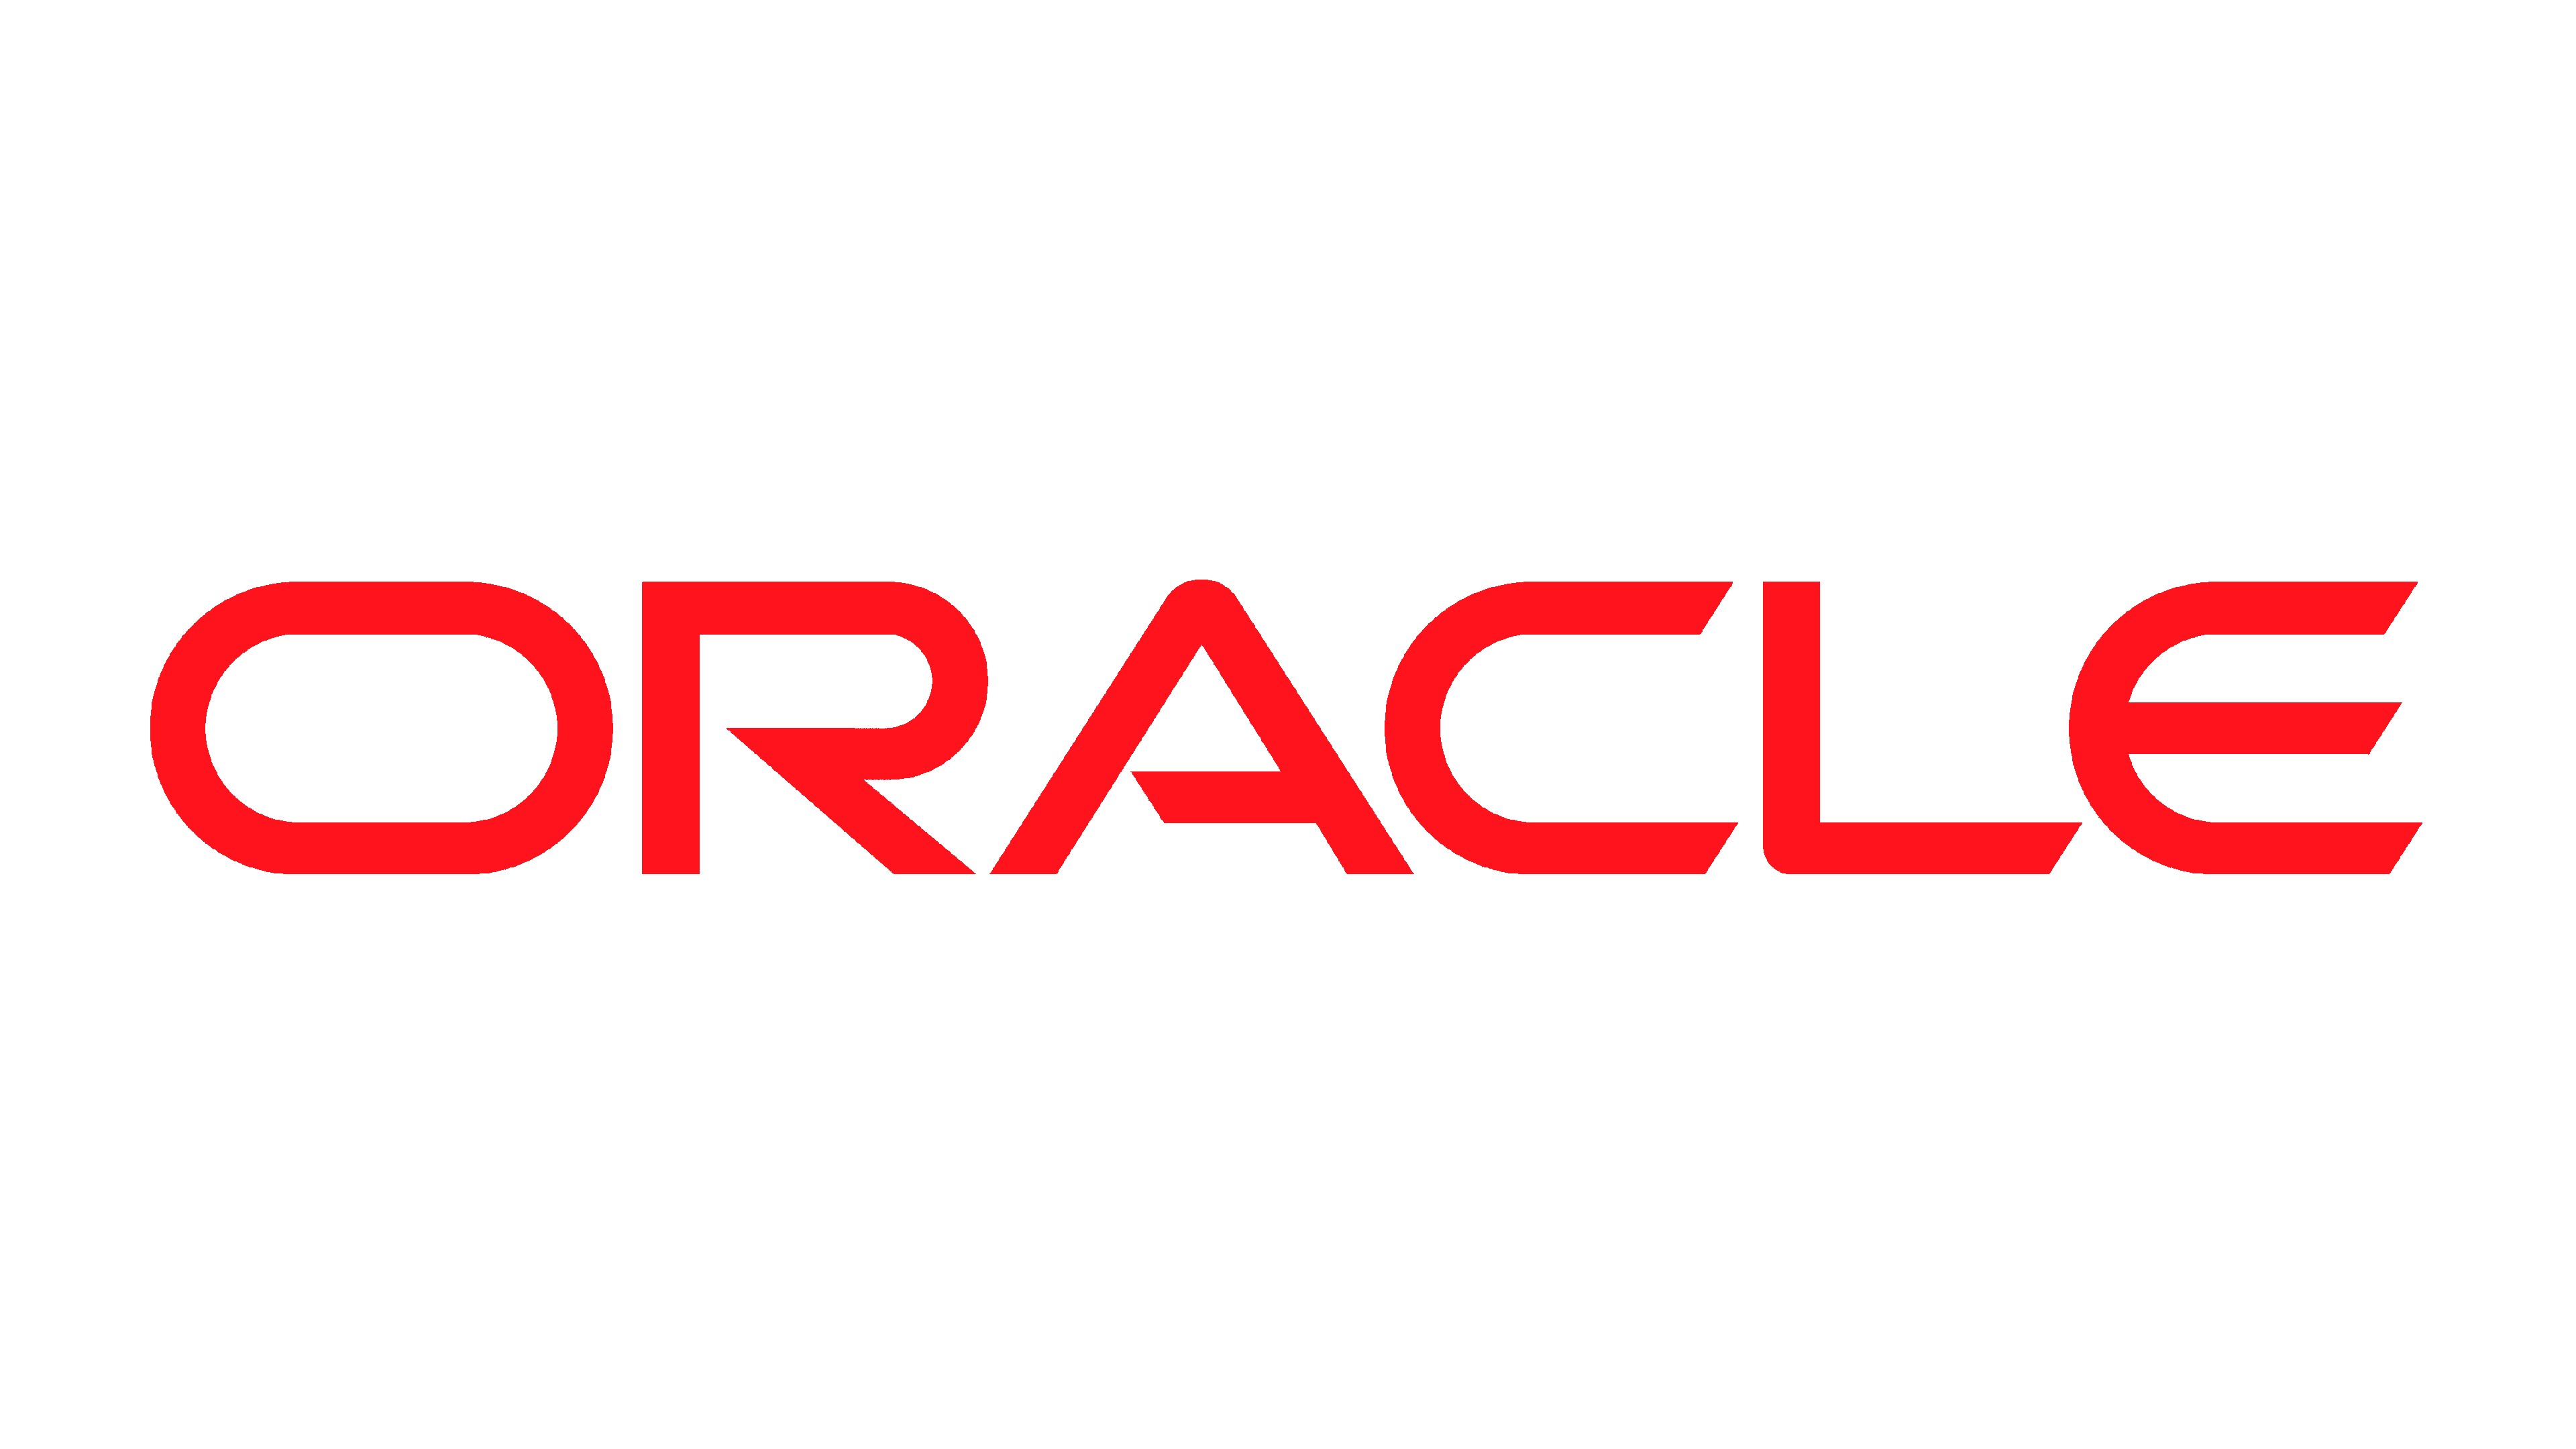 Oracle Logo Logo